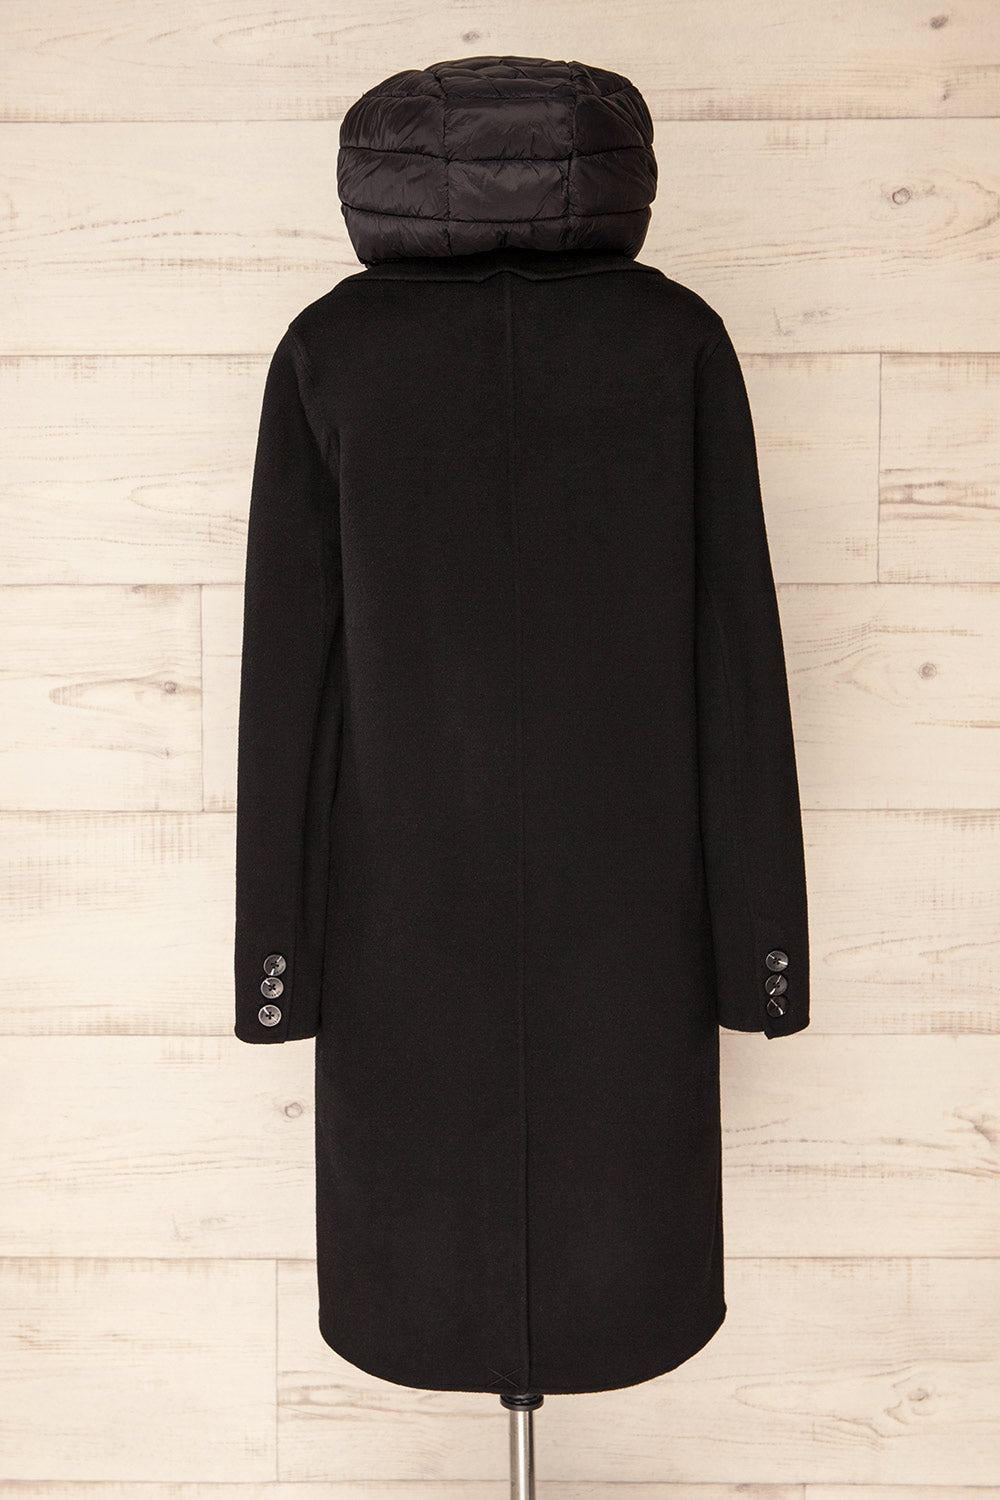 Violan 3-in-1 Wool Coat with Hood | La Petite Garçonne back hood view